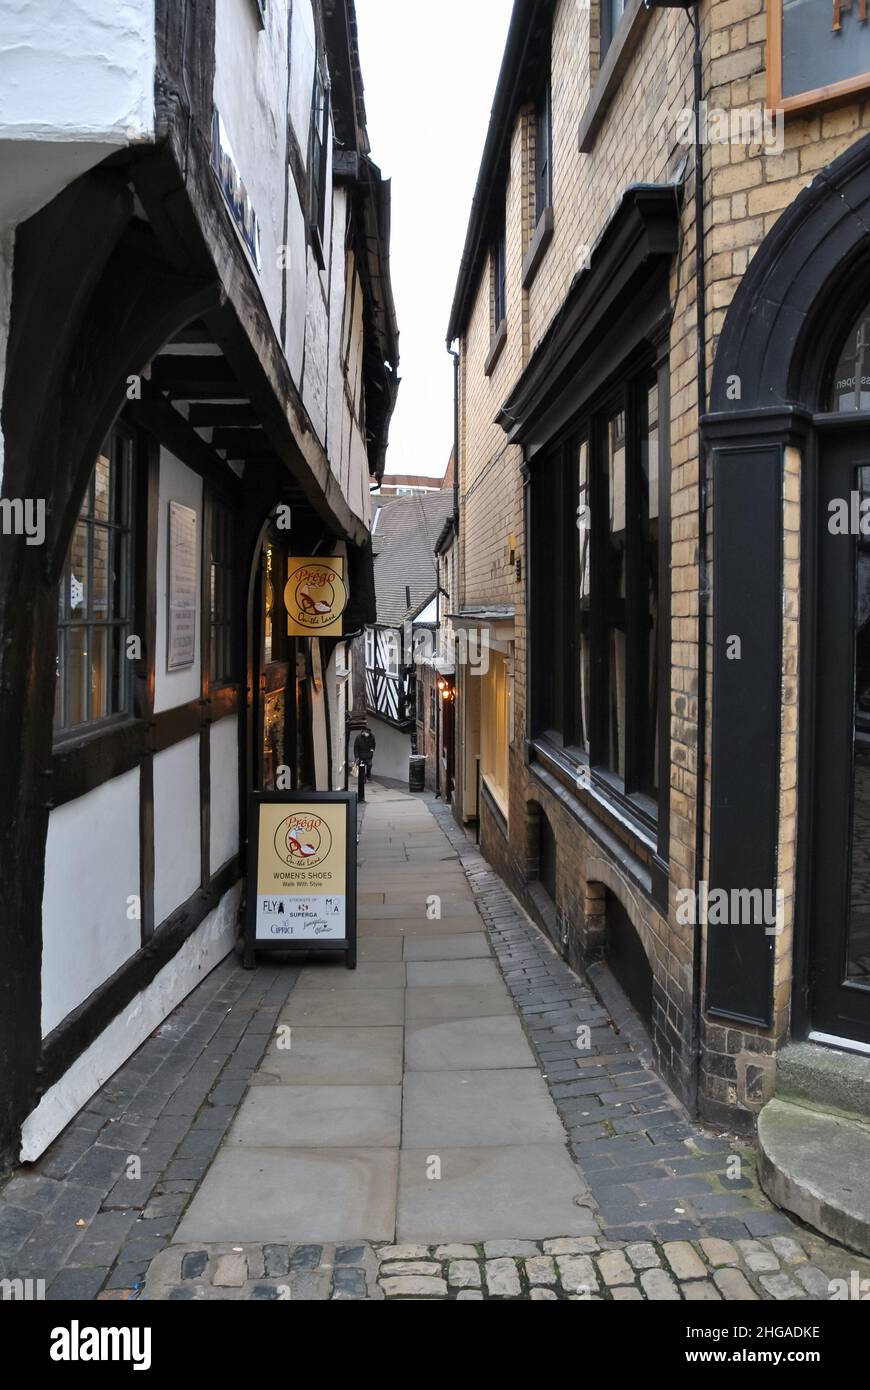 The Historic Grope Lane, Shrewsbury Stock Photo